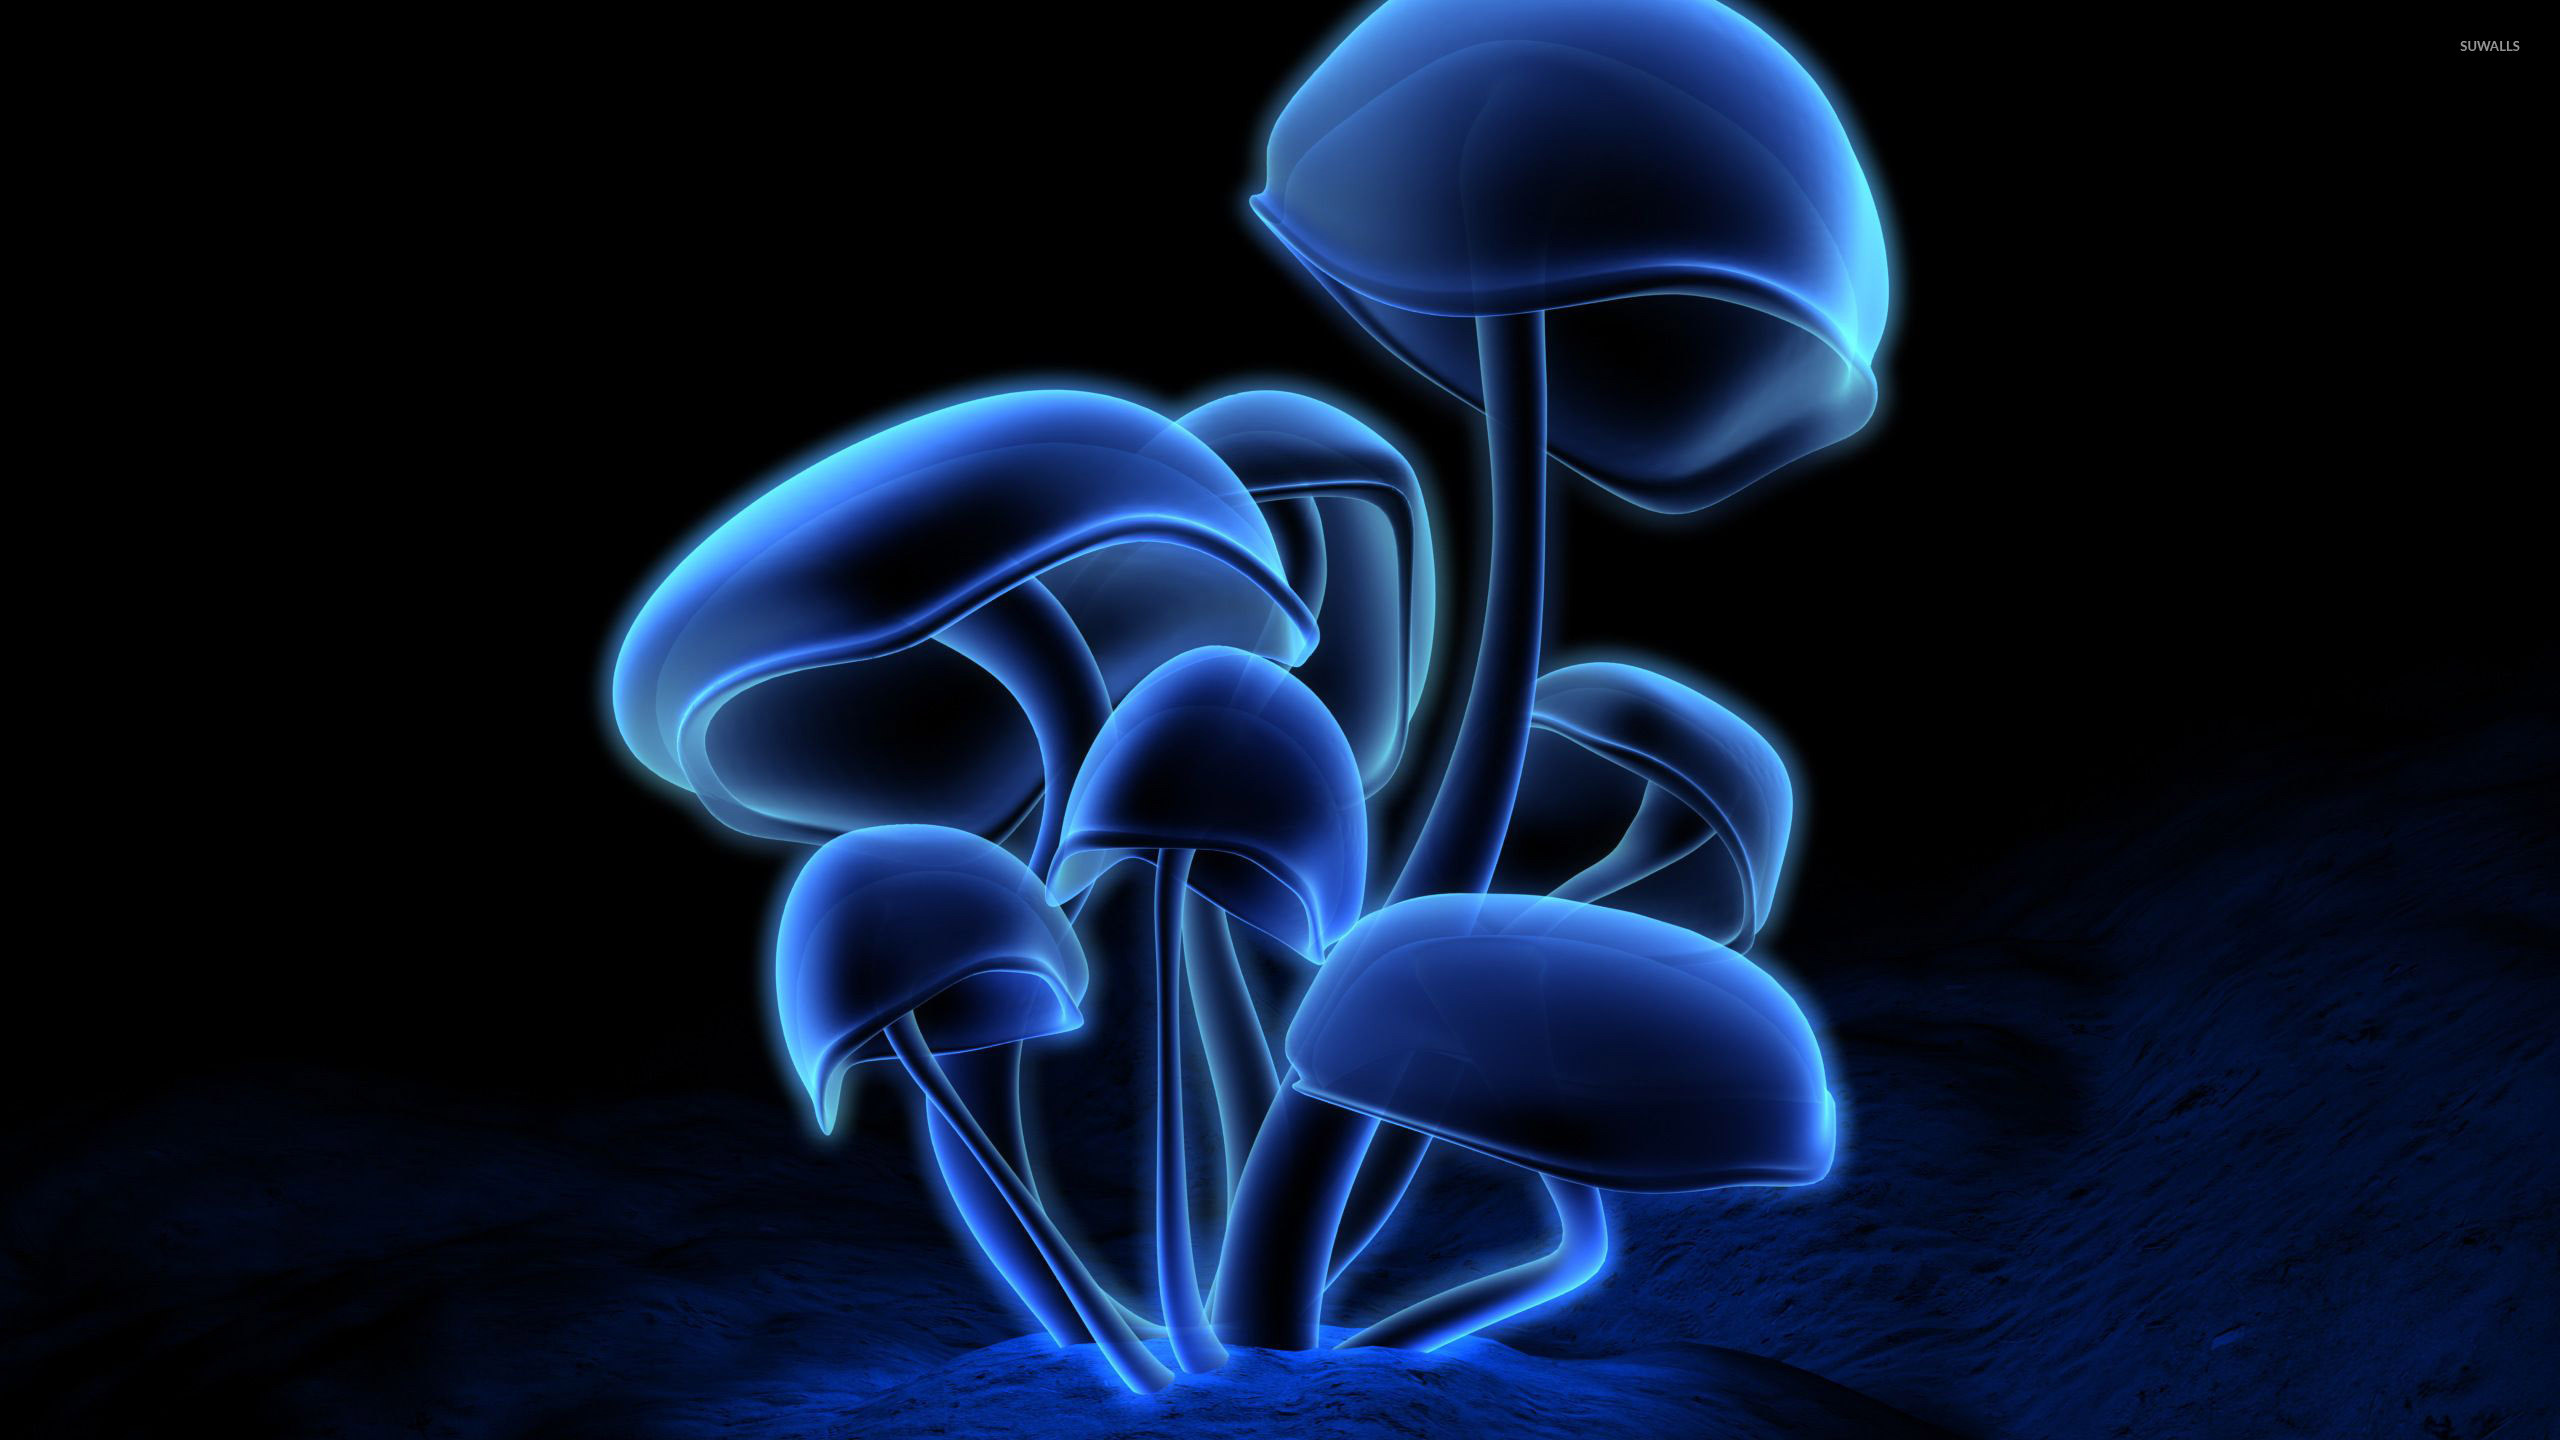 Nature Mushroom 4k Ultra HD Wallpaper by sophiaspurgin